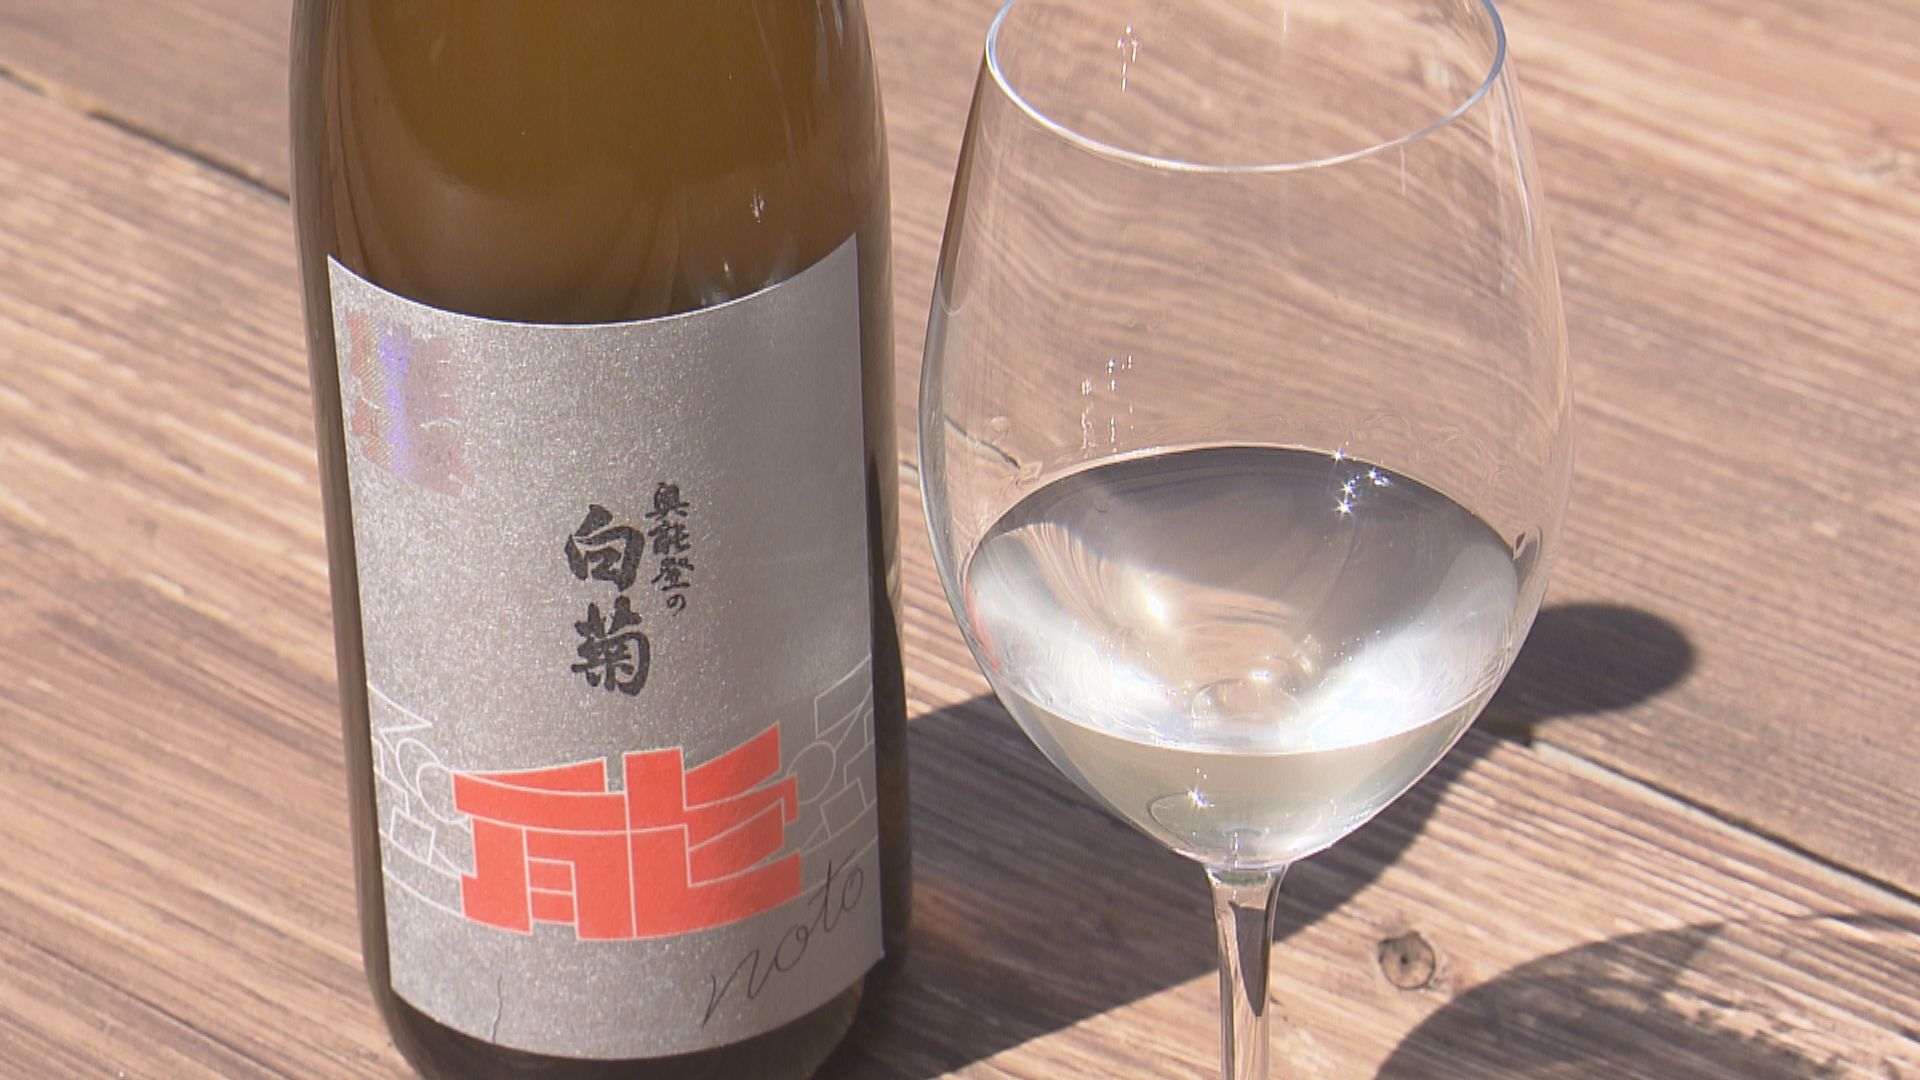 再建に向け福井で歩み続ける 地震で被災した輪島の老舗酒蔵が永平寺町で仕込んだ酒が完成